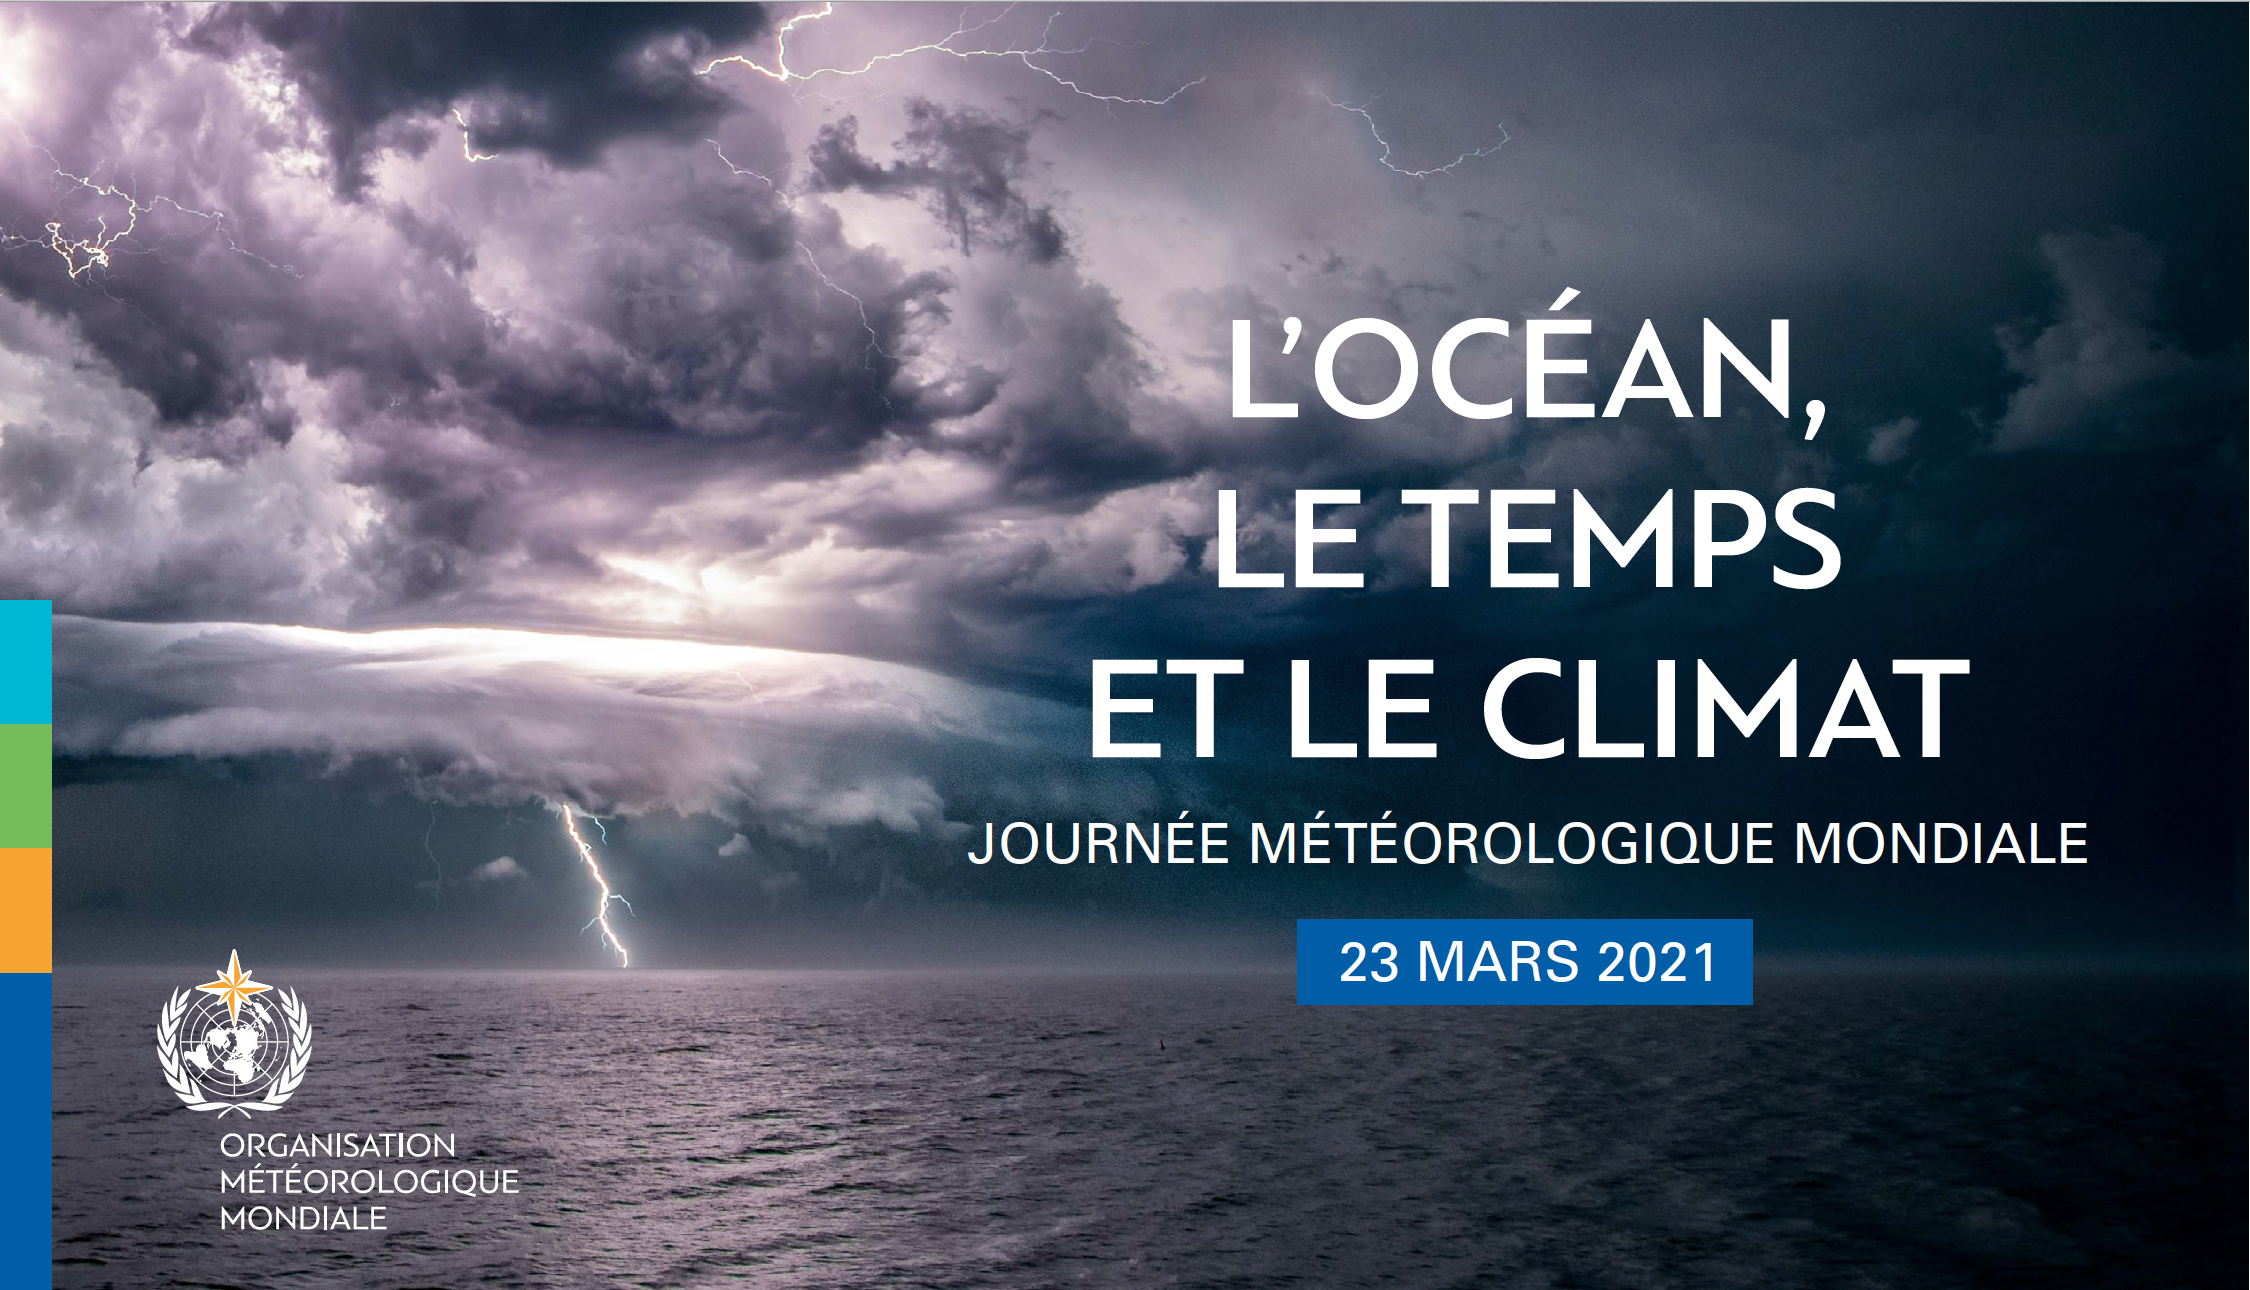 Journée météorologique mondiale : 23 Mars 2021 